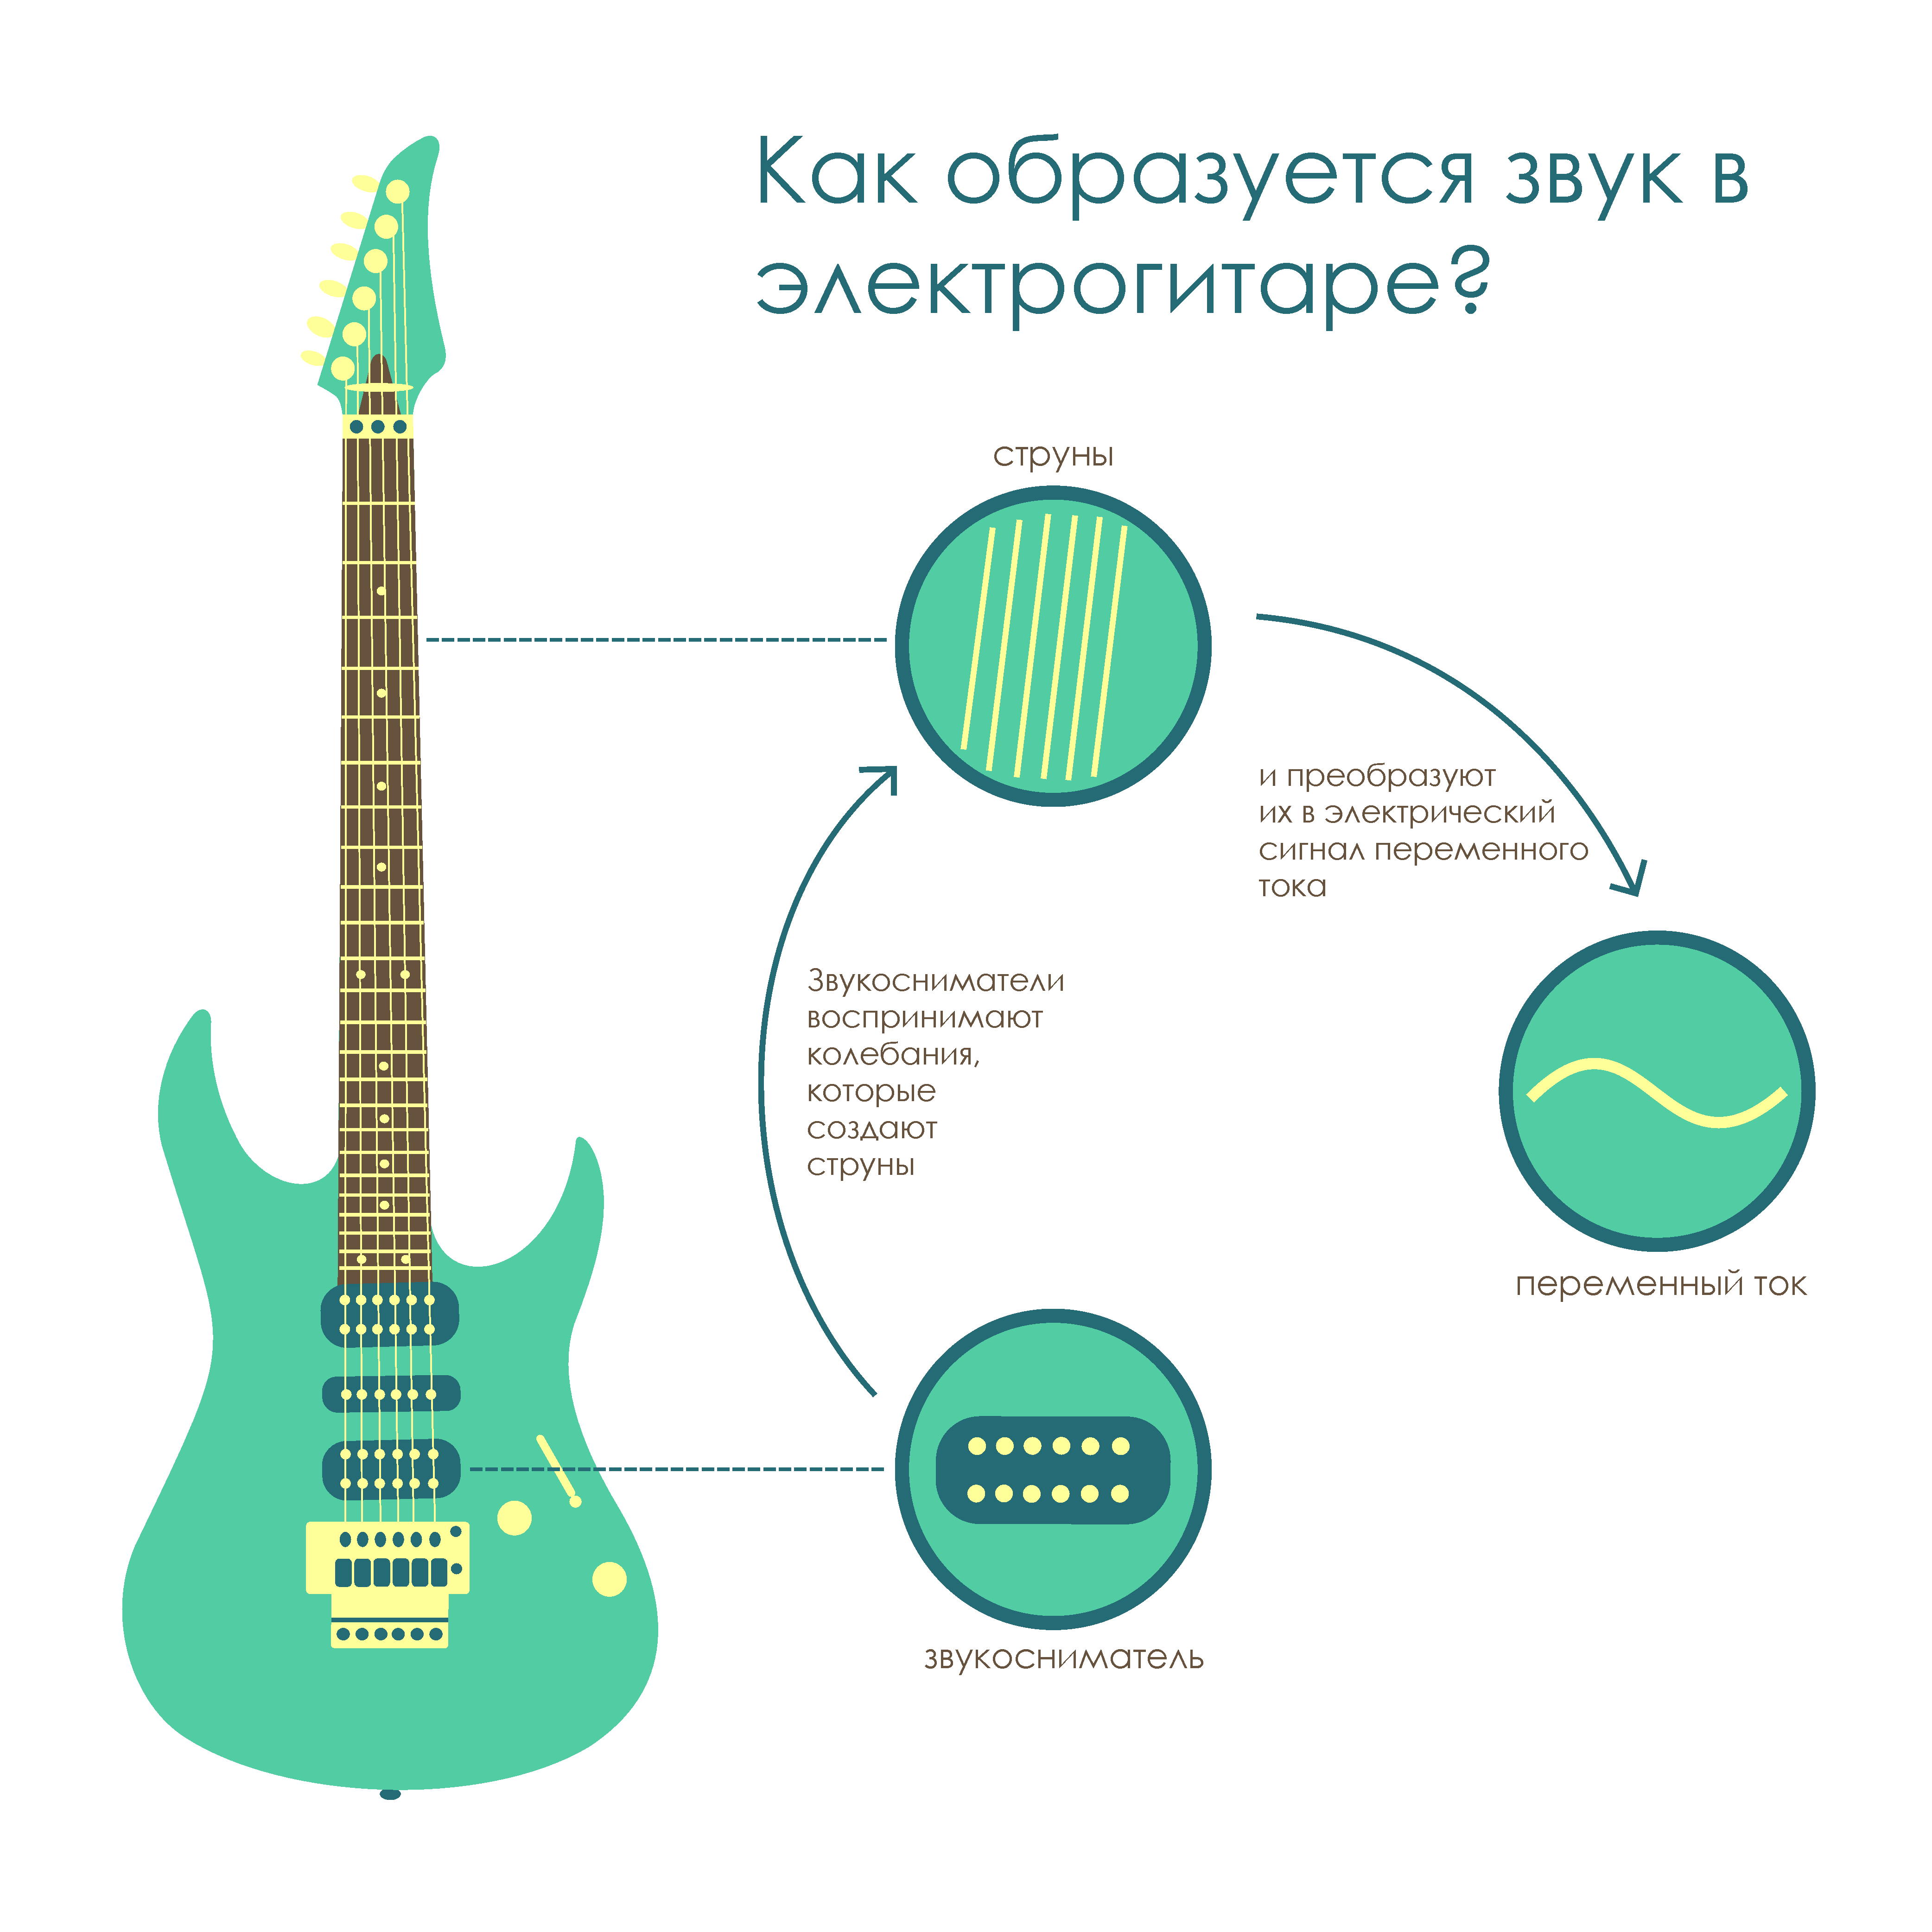 Звуки 6 струнной гитары. Электронное звучание гитара. Электрогитара звучание. Гитара инфографика. Как образуется звук в гитаре.